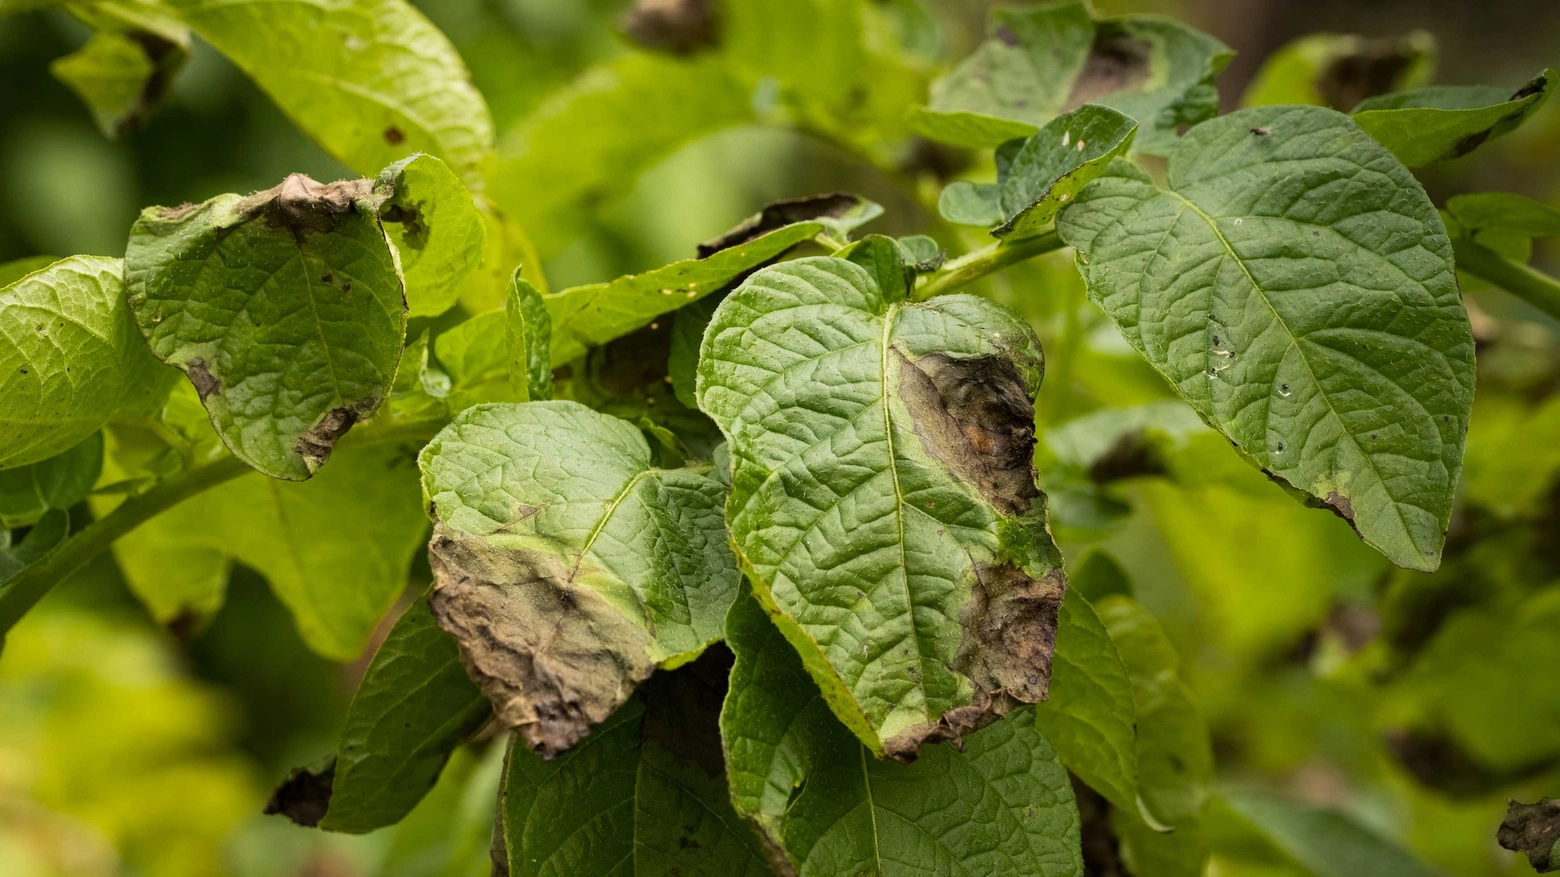 La zeolite protegge la pianta da parassiti e muffe in modo naturale.